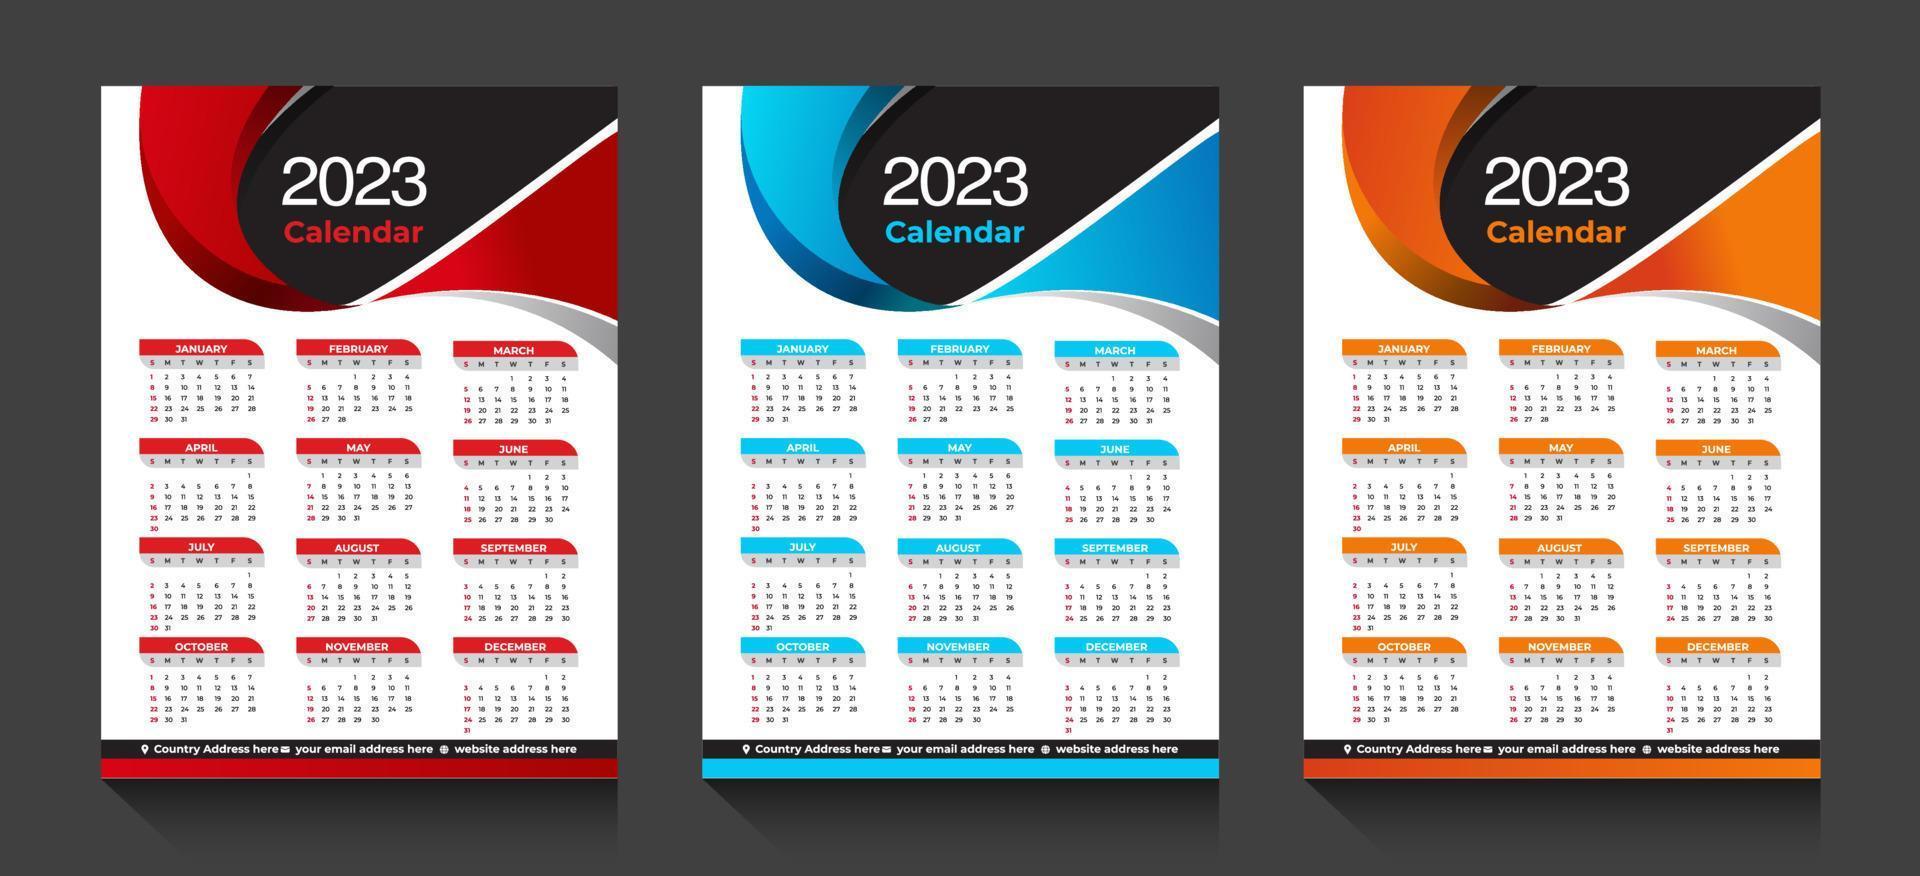 le vecteur de calendrier de l'année 2023 avec des formes abstraites et une conception de calendrier d'affaires minimal de couleur bleue pour la nouvelle année calendrier du nouvel an 2023 avec calcul du week-end la semaine commence le dimanche